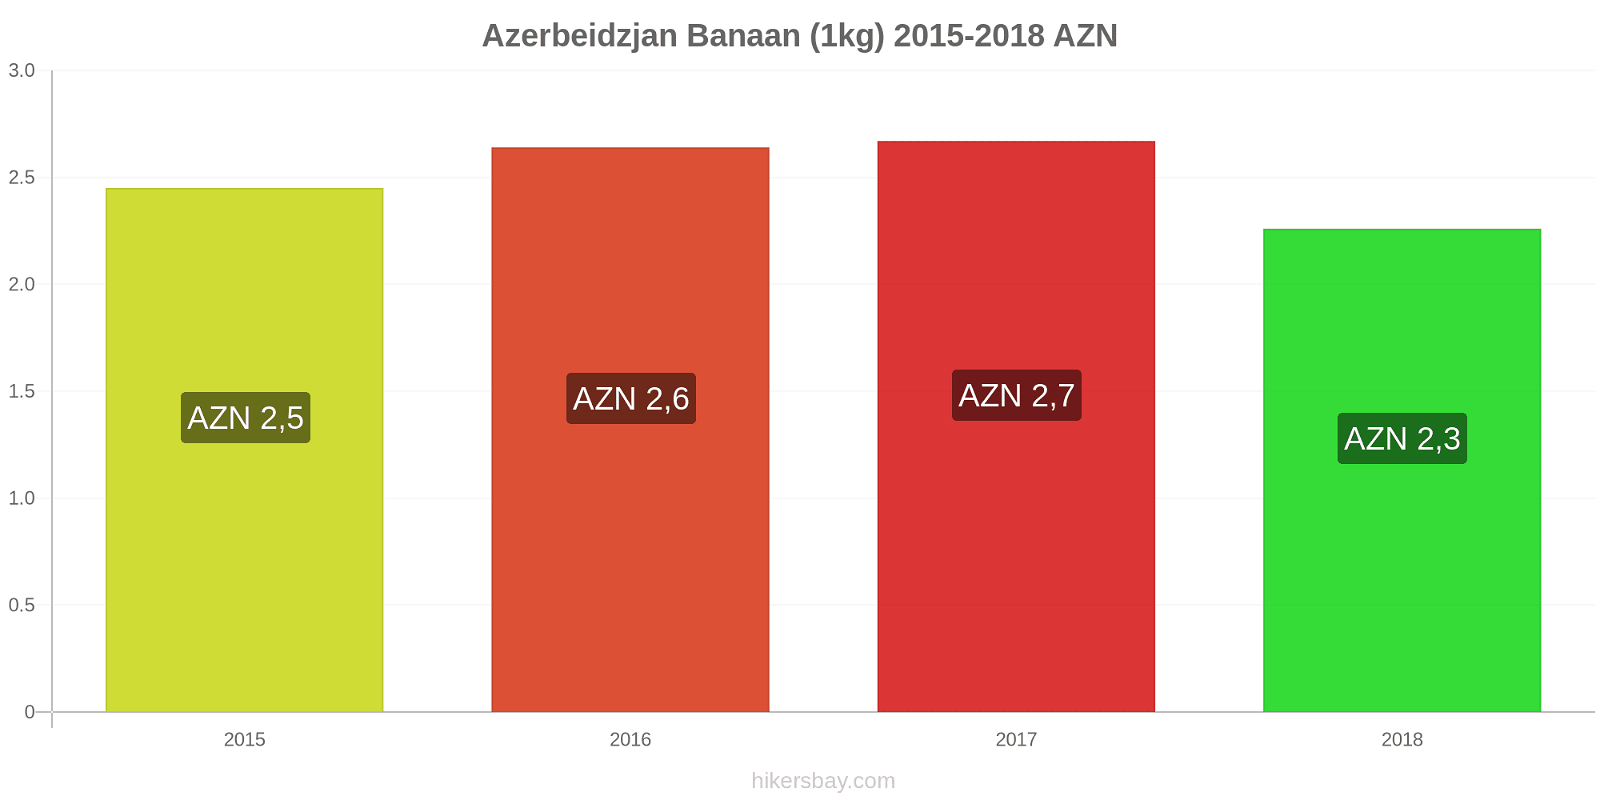 Azerbeidzjan prijswijzigingen Bananen (1kg) hikersbay.com